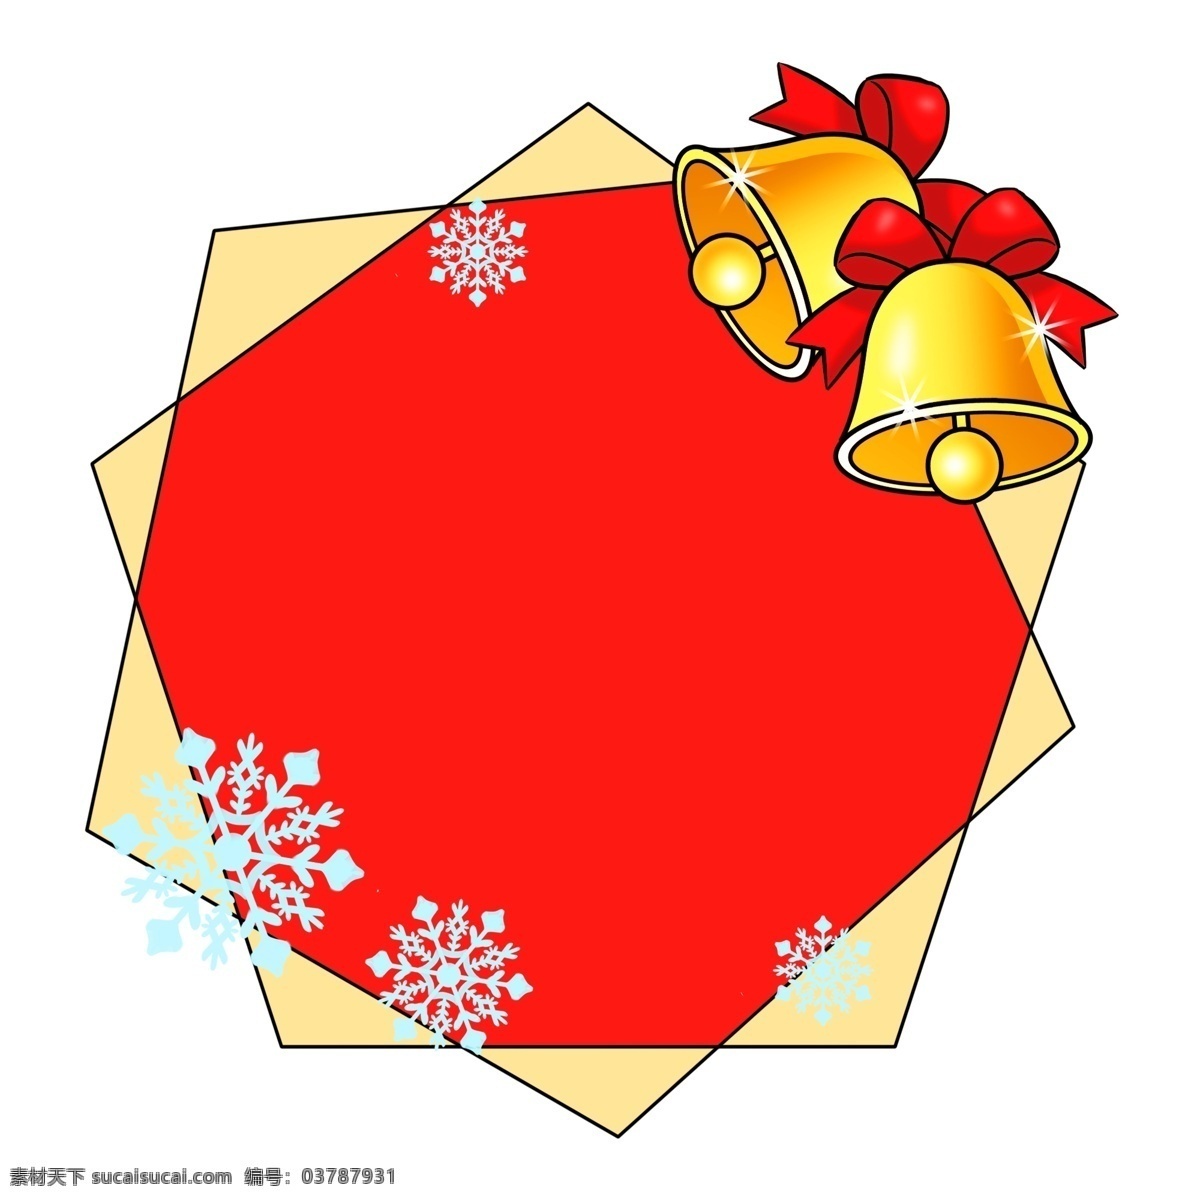 手绘 黄色 铃铛 边框 红色底纹插画 手绘雪花边框 红色丝带打结 多边形边框 圣诞节边框 黄色铃铛边框